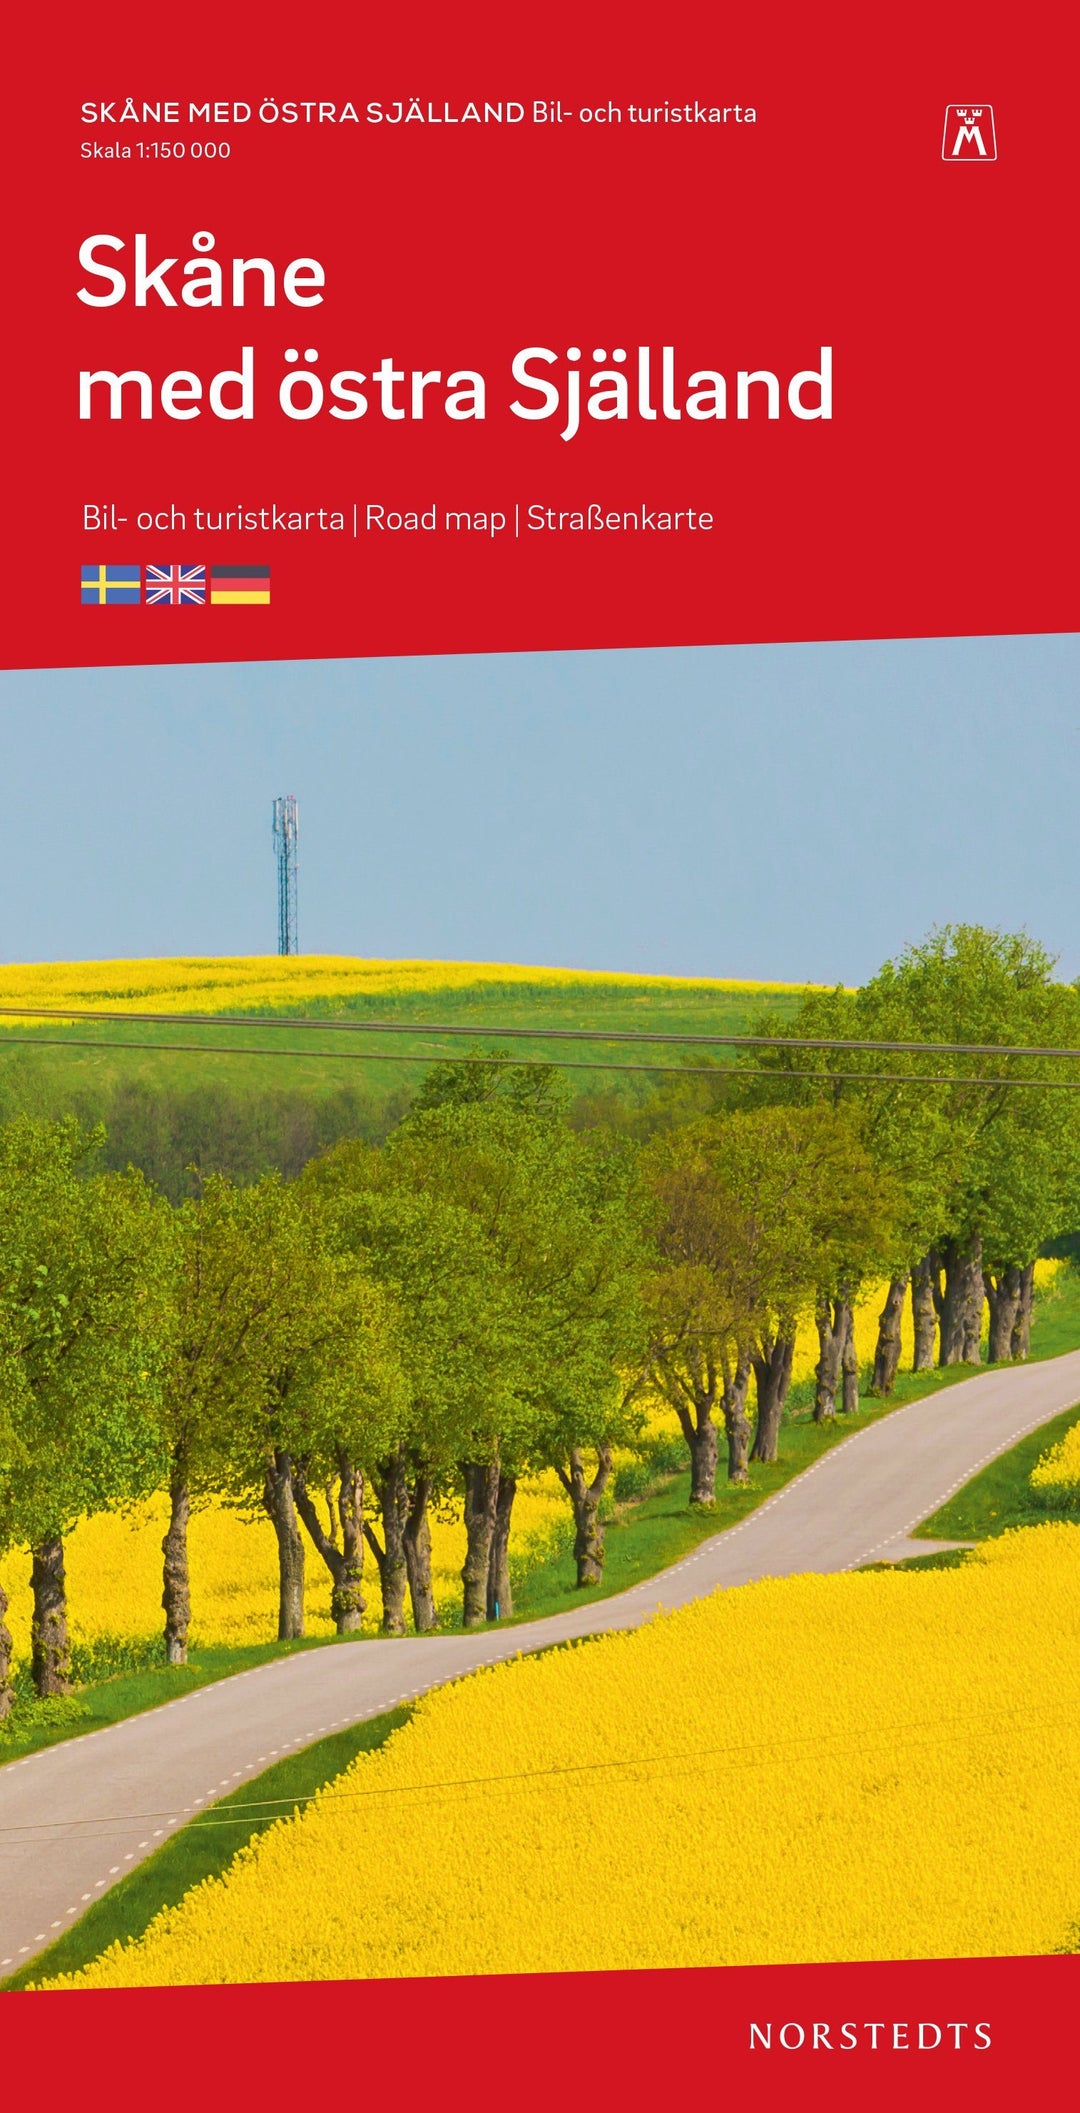 Carte routière - Scanie (Suède) & Seeland est (Danemark) | Norstedts carte pliée Norstedts 